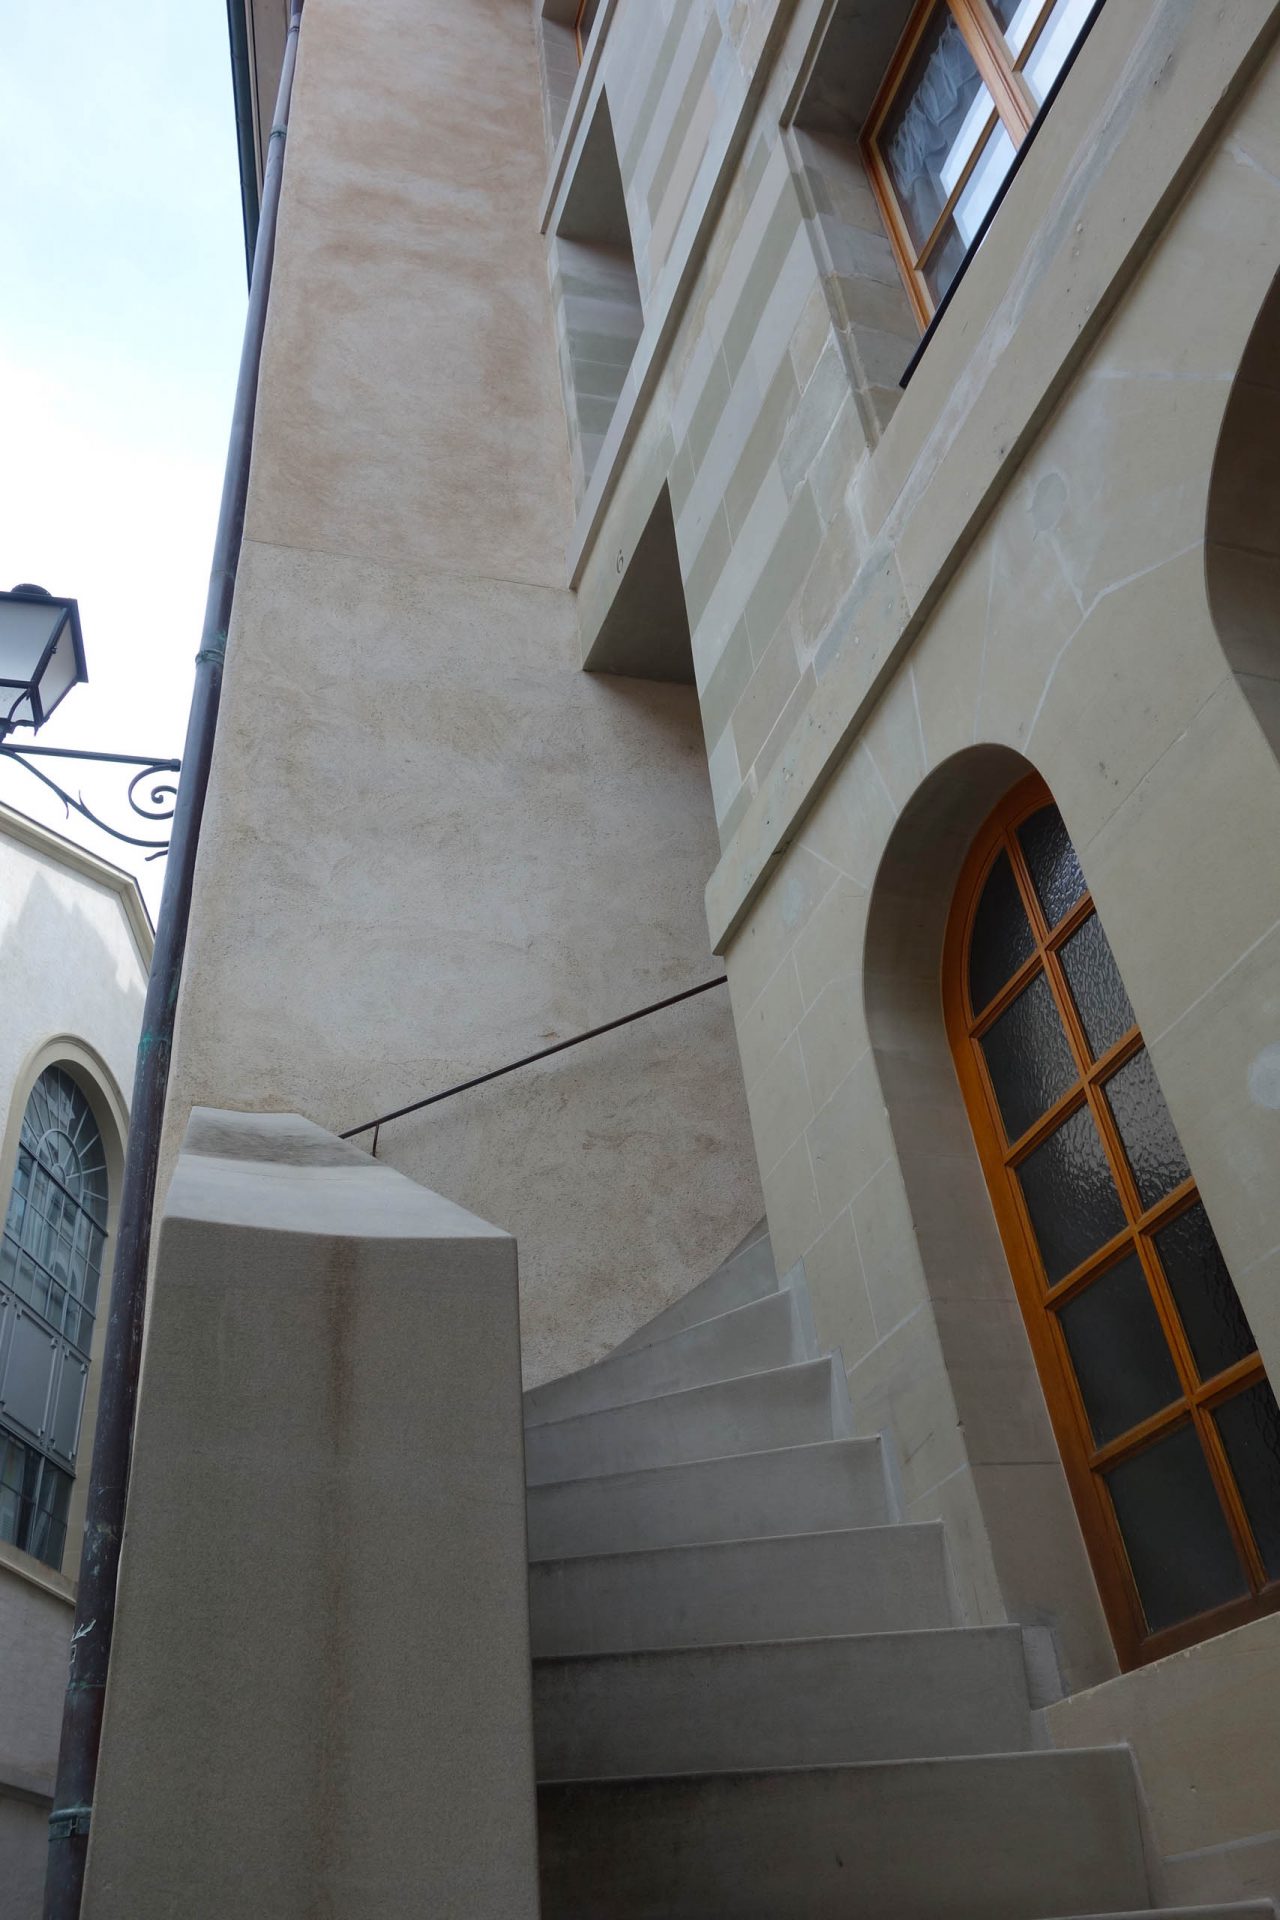 Escaliers d'accès à l'immeuble d'habitation de la rue Tabazan 6